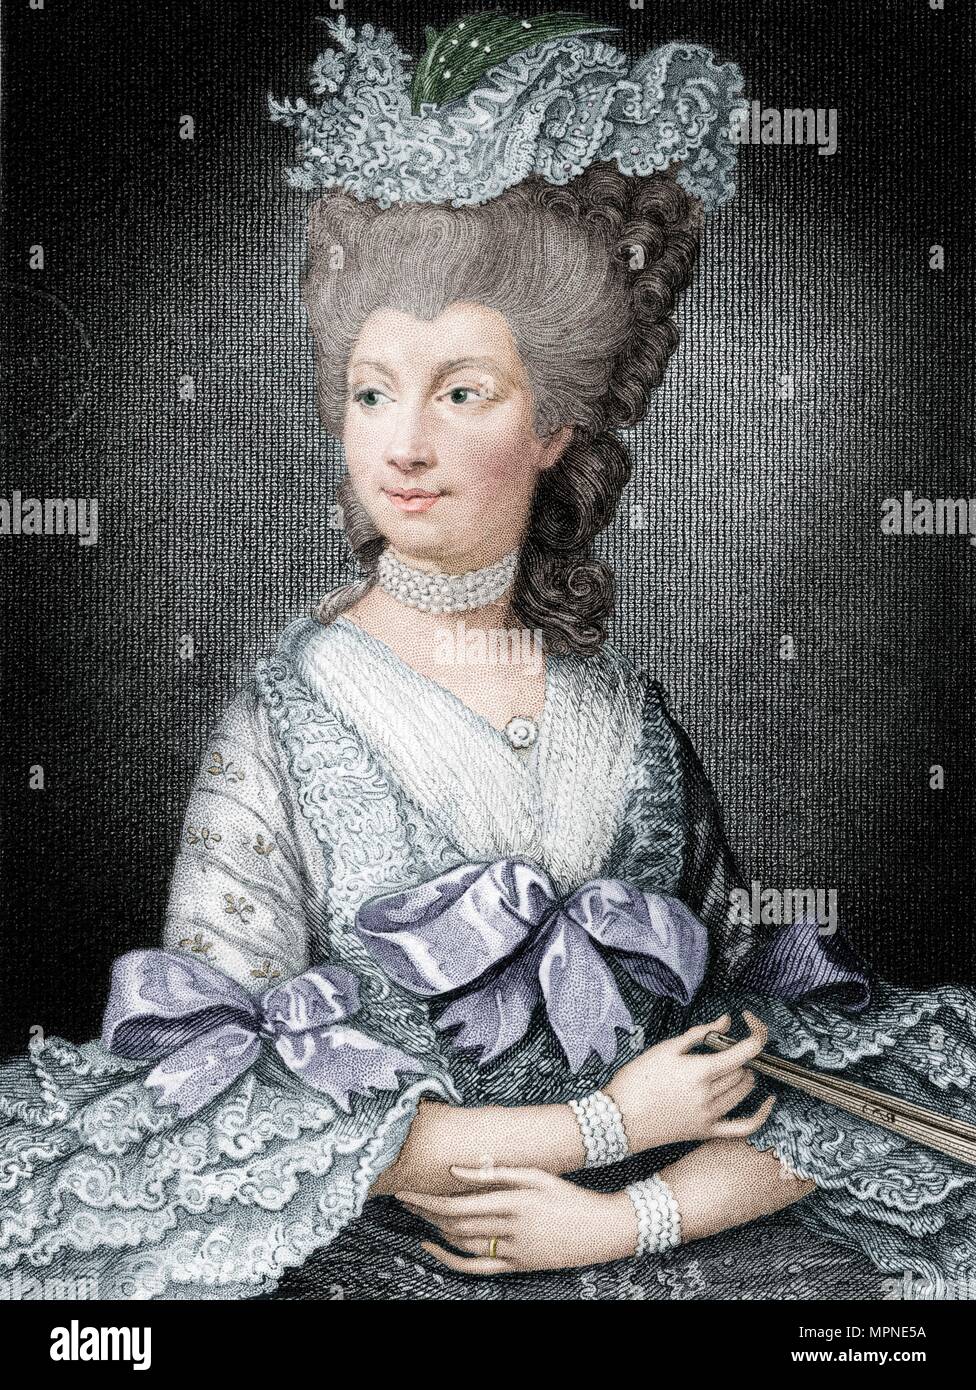 Queen Charlotte, queen consort of George III, (19th century). Artist: Read. Stock Photo